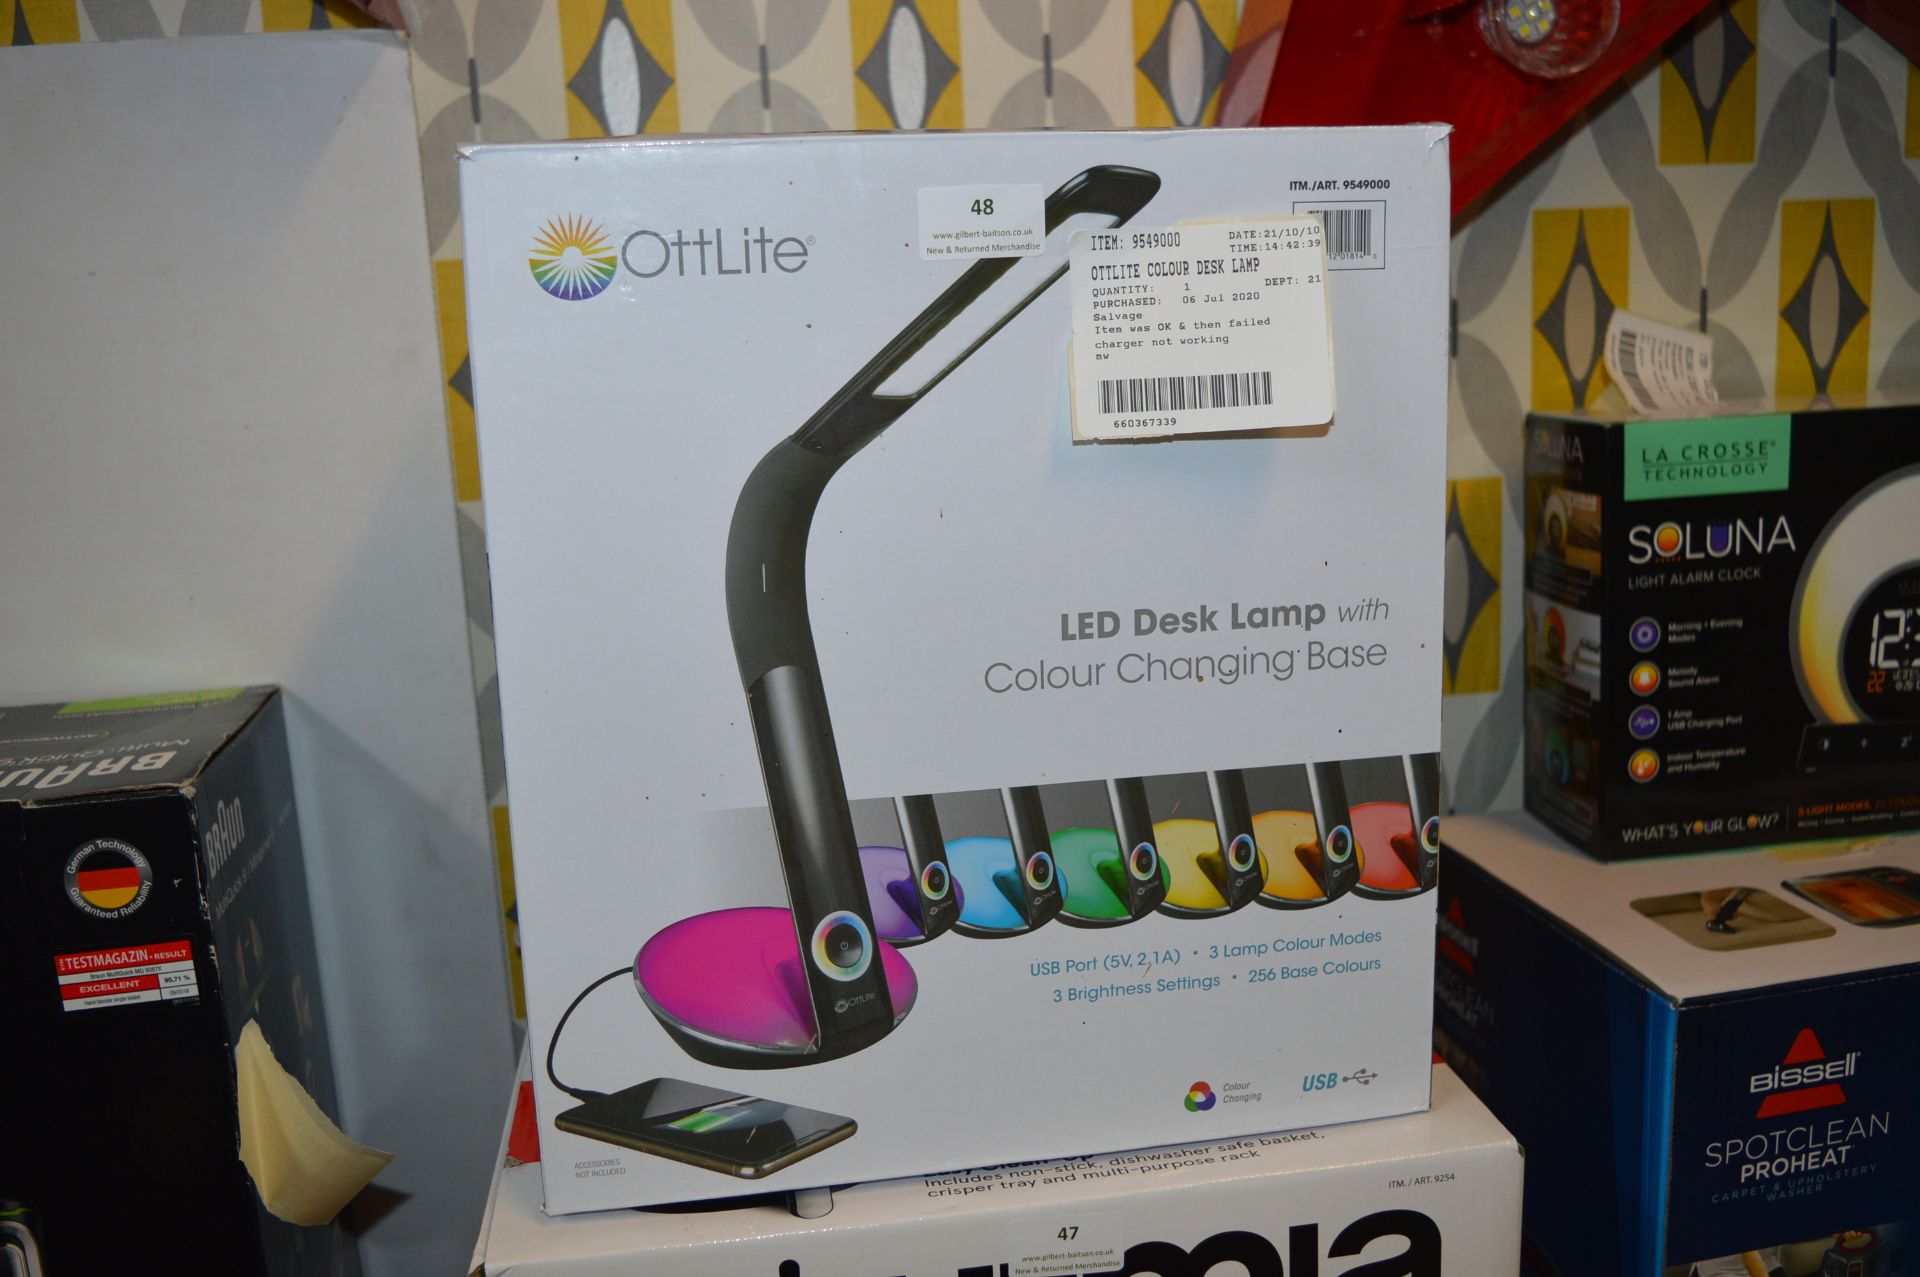 *Ottlite Colour Desk Lamp